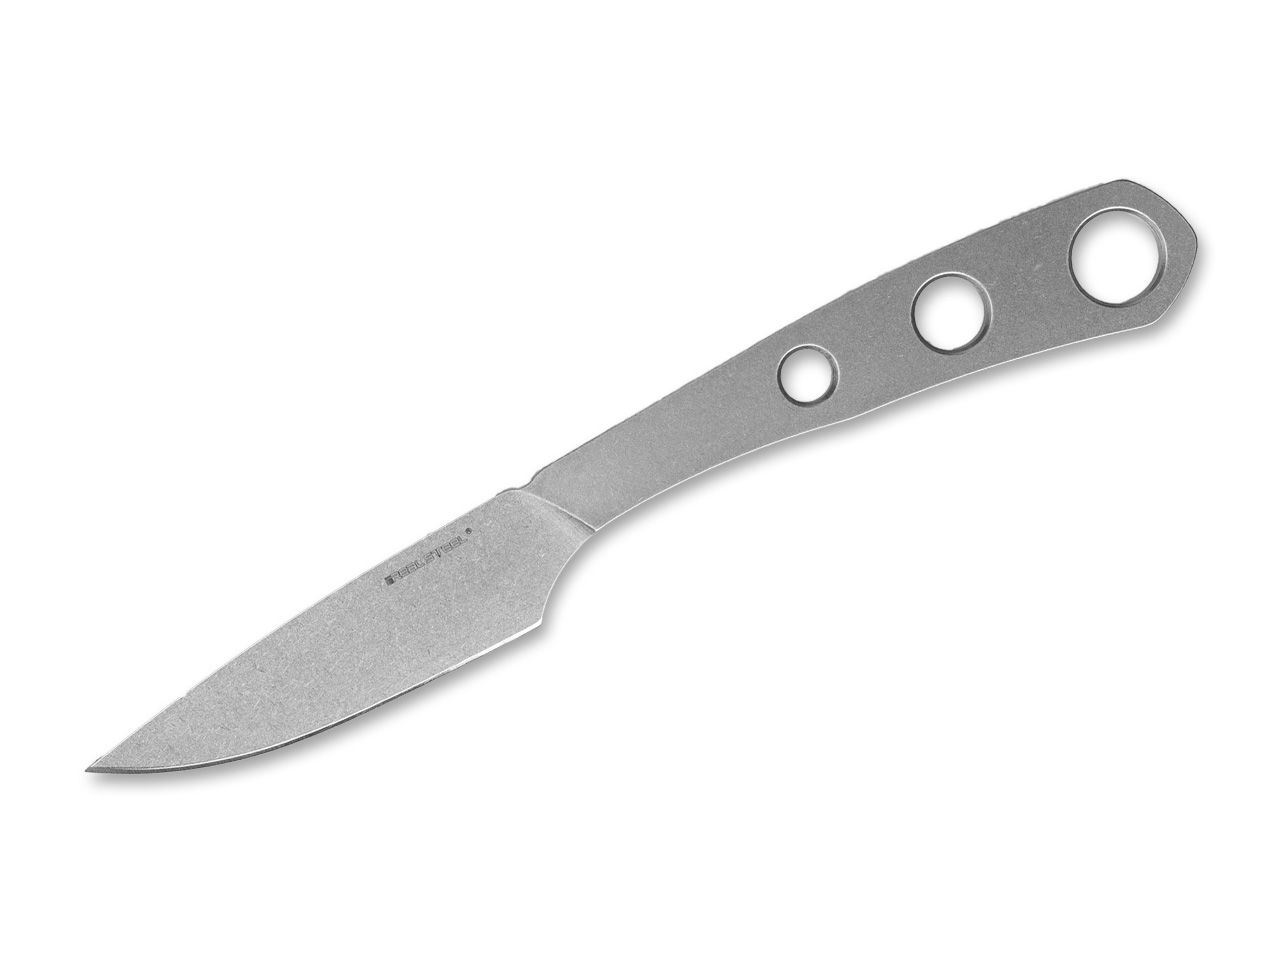 Real Steel Marlin kleines schlankes Neckknife Messer